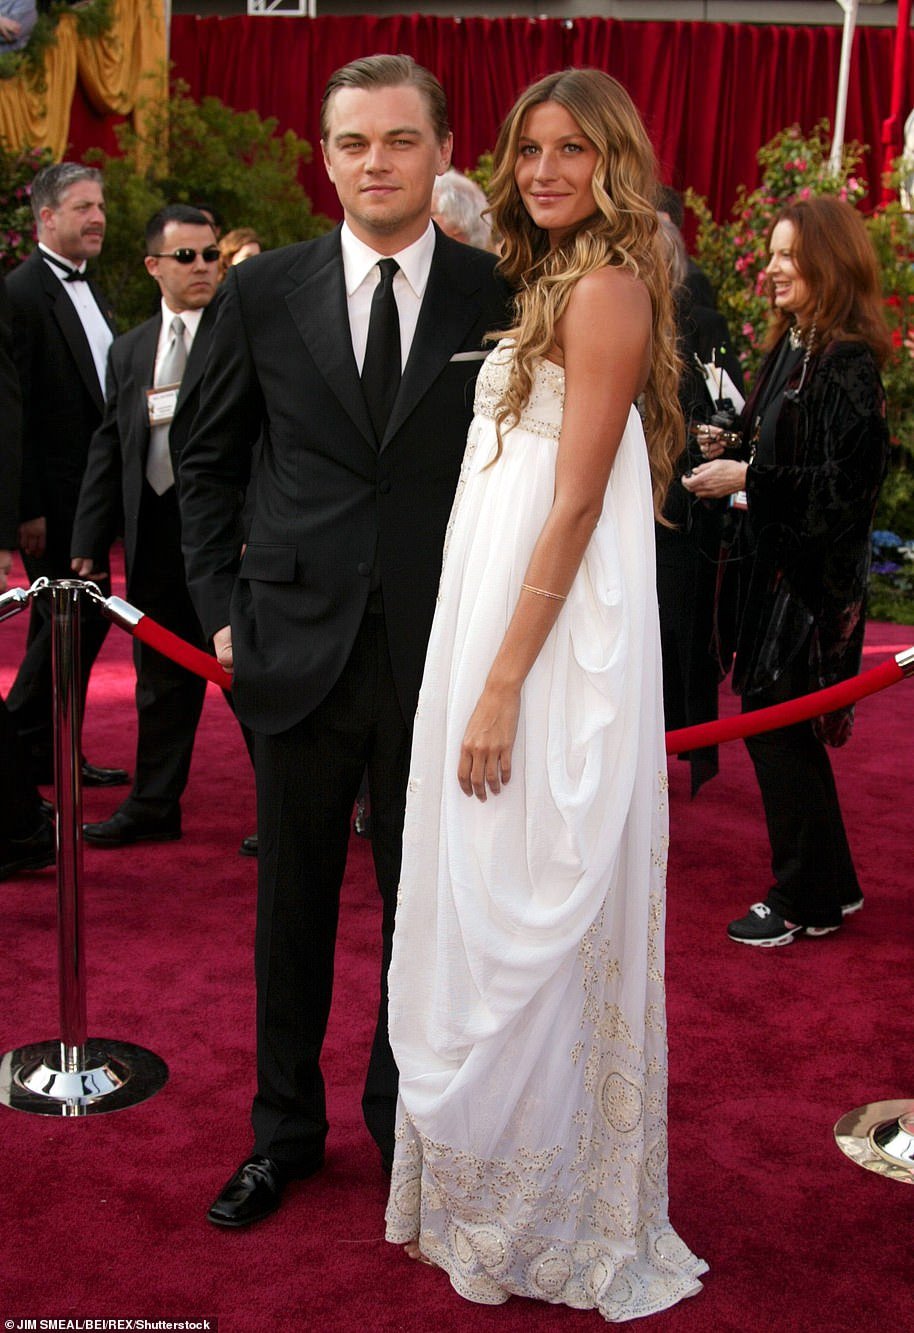 Gisele and Leonardo at the 2005 Academy Awards